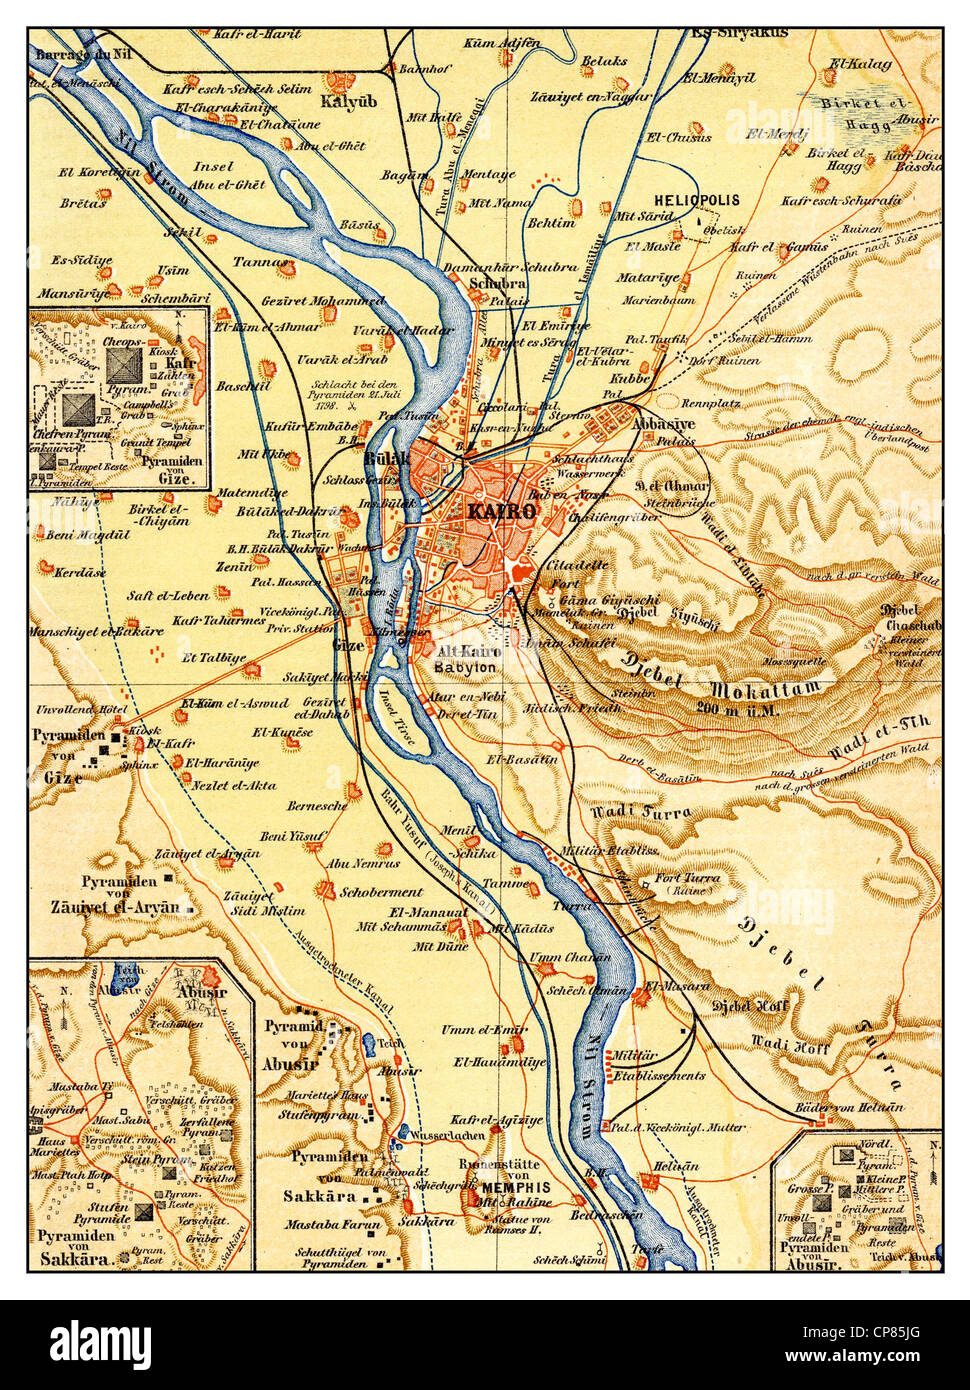 Historische alte Stadtkarte 1885 Kairo und die Pyramidenfelder Stadtplan B13 